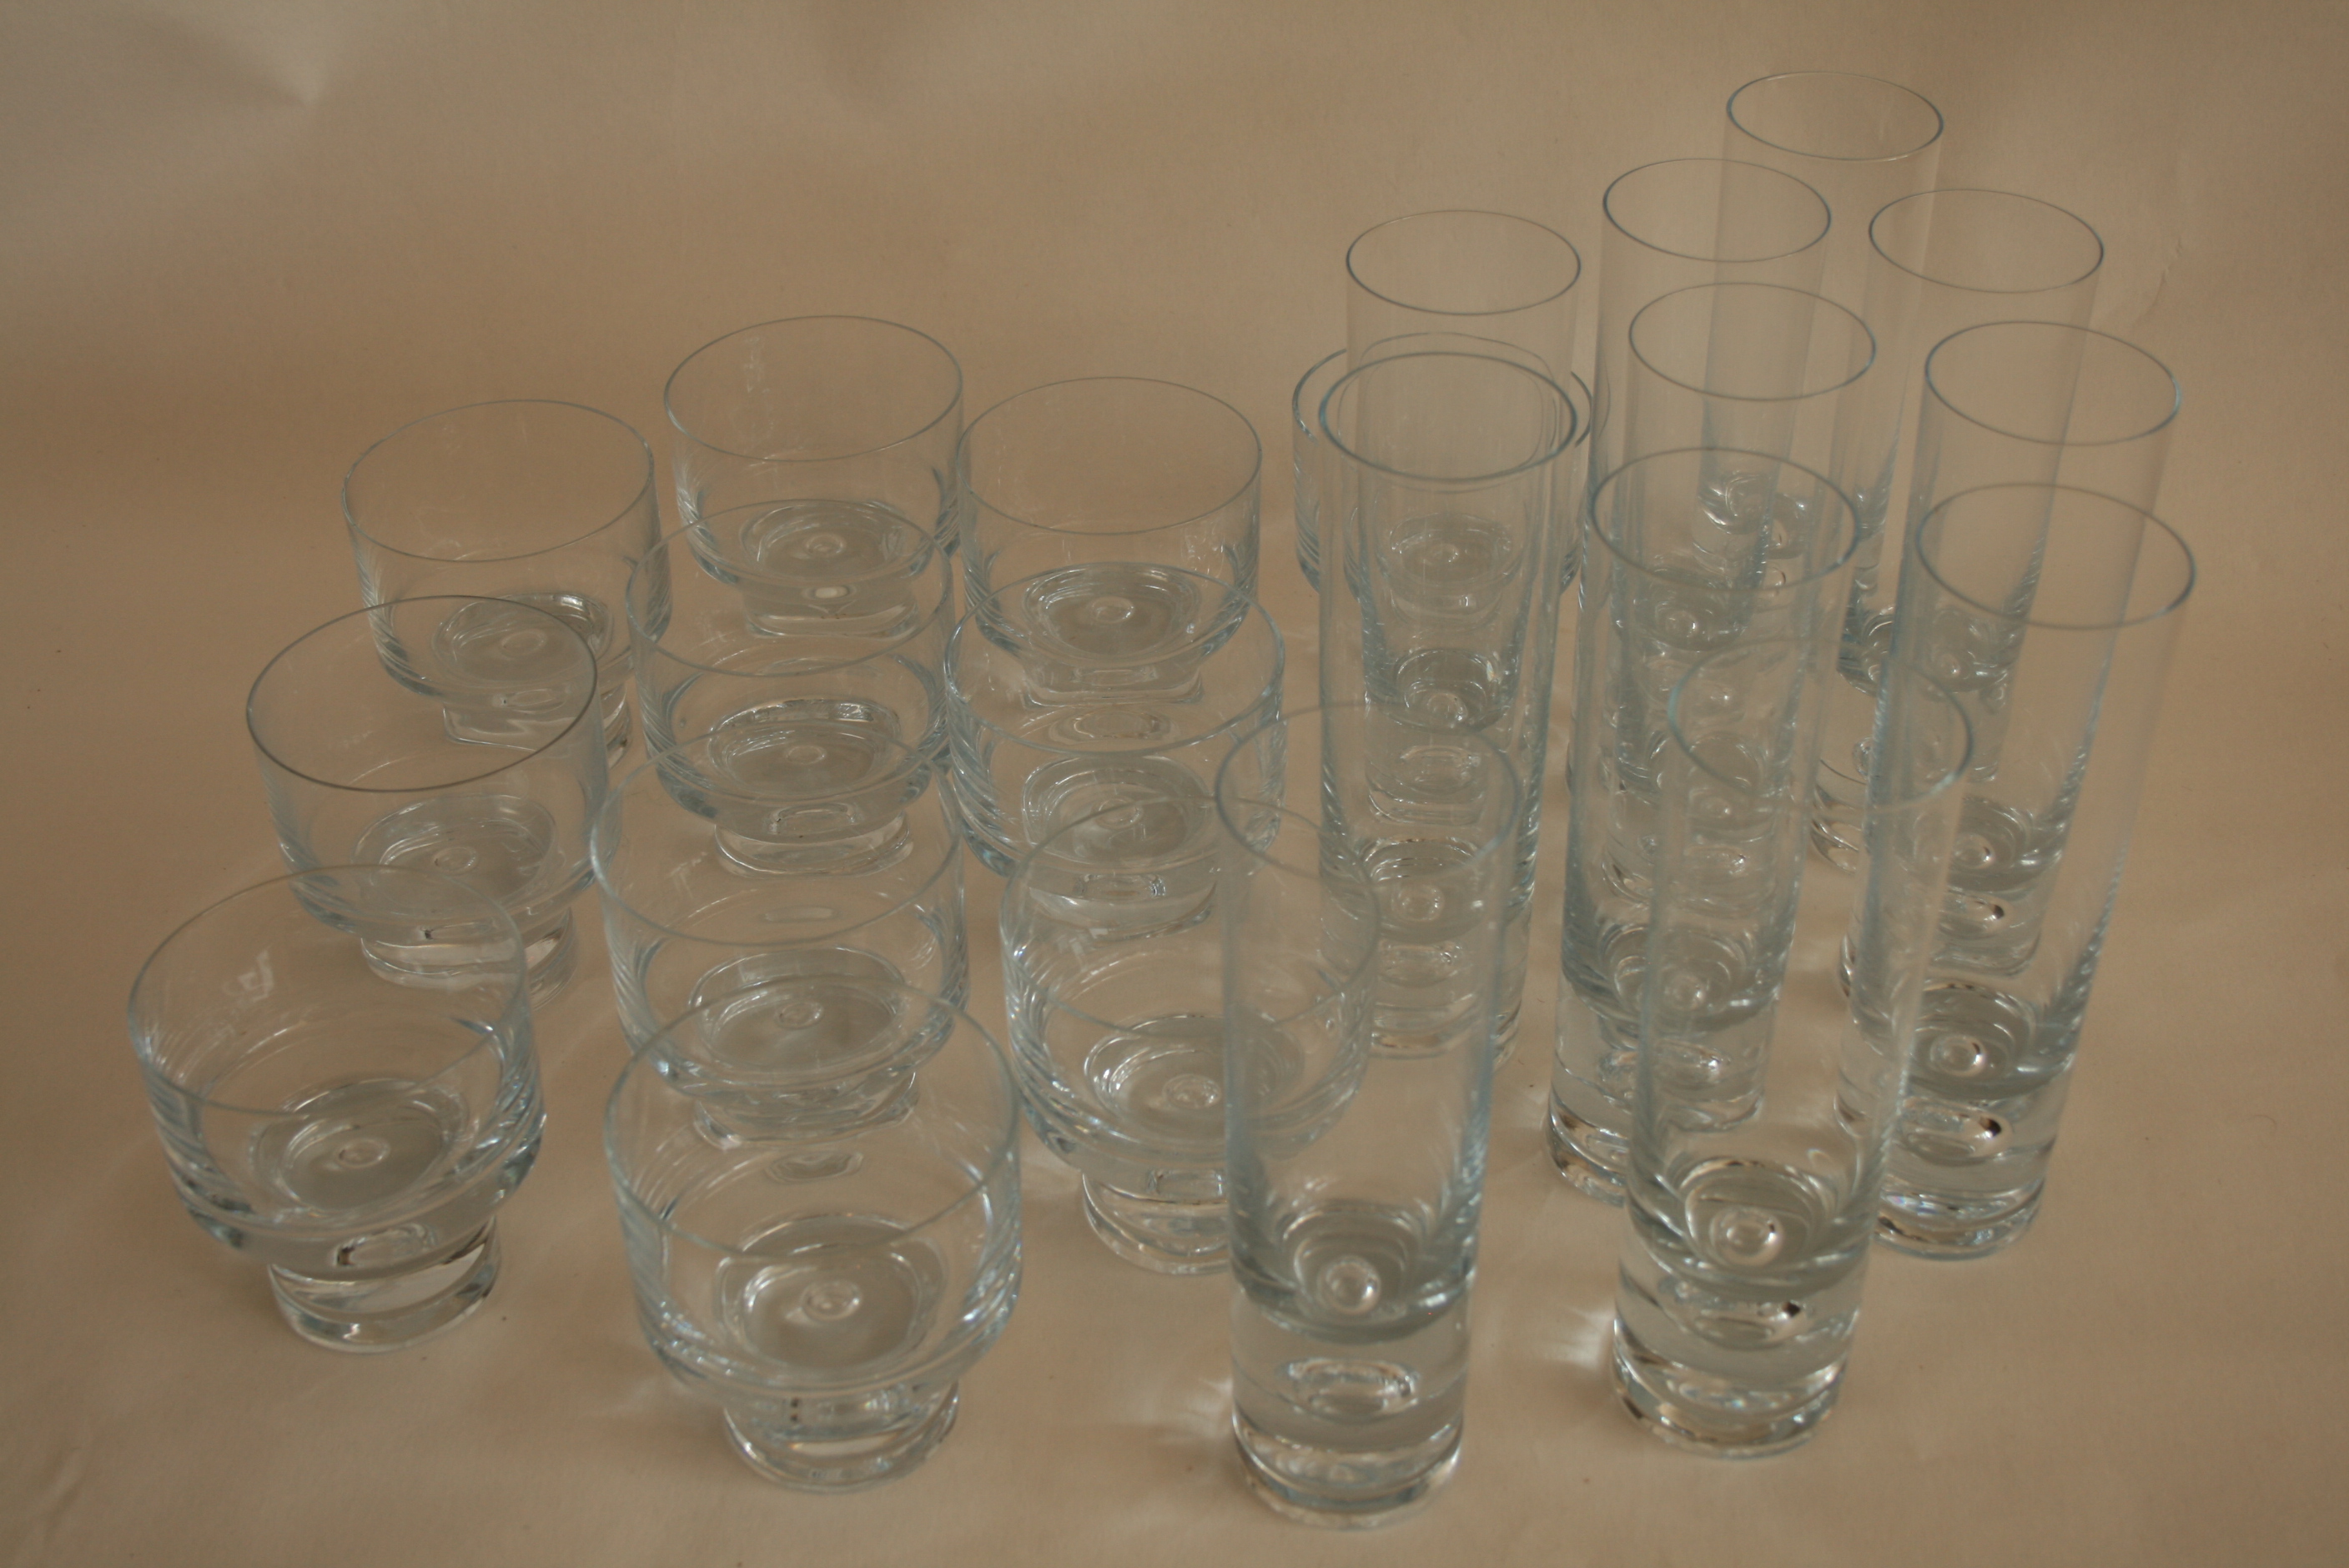 Ensemble de 11 verres en cristal irisation bleue à gros pied central (9,5 cm) et 11 [...] - Image 2 of 2